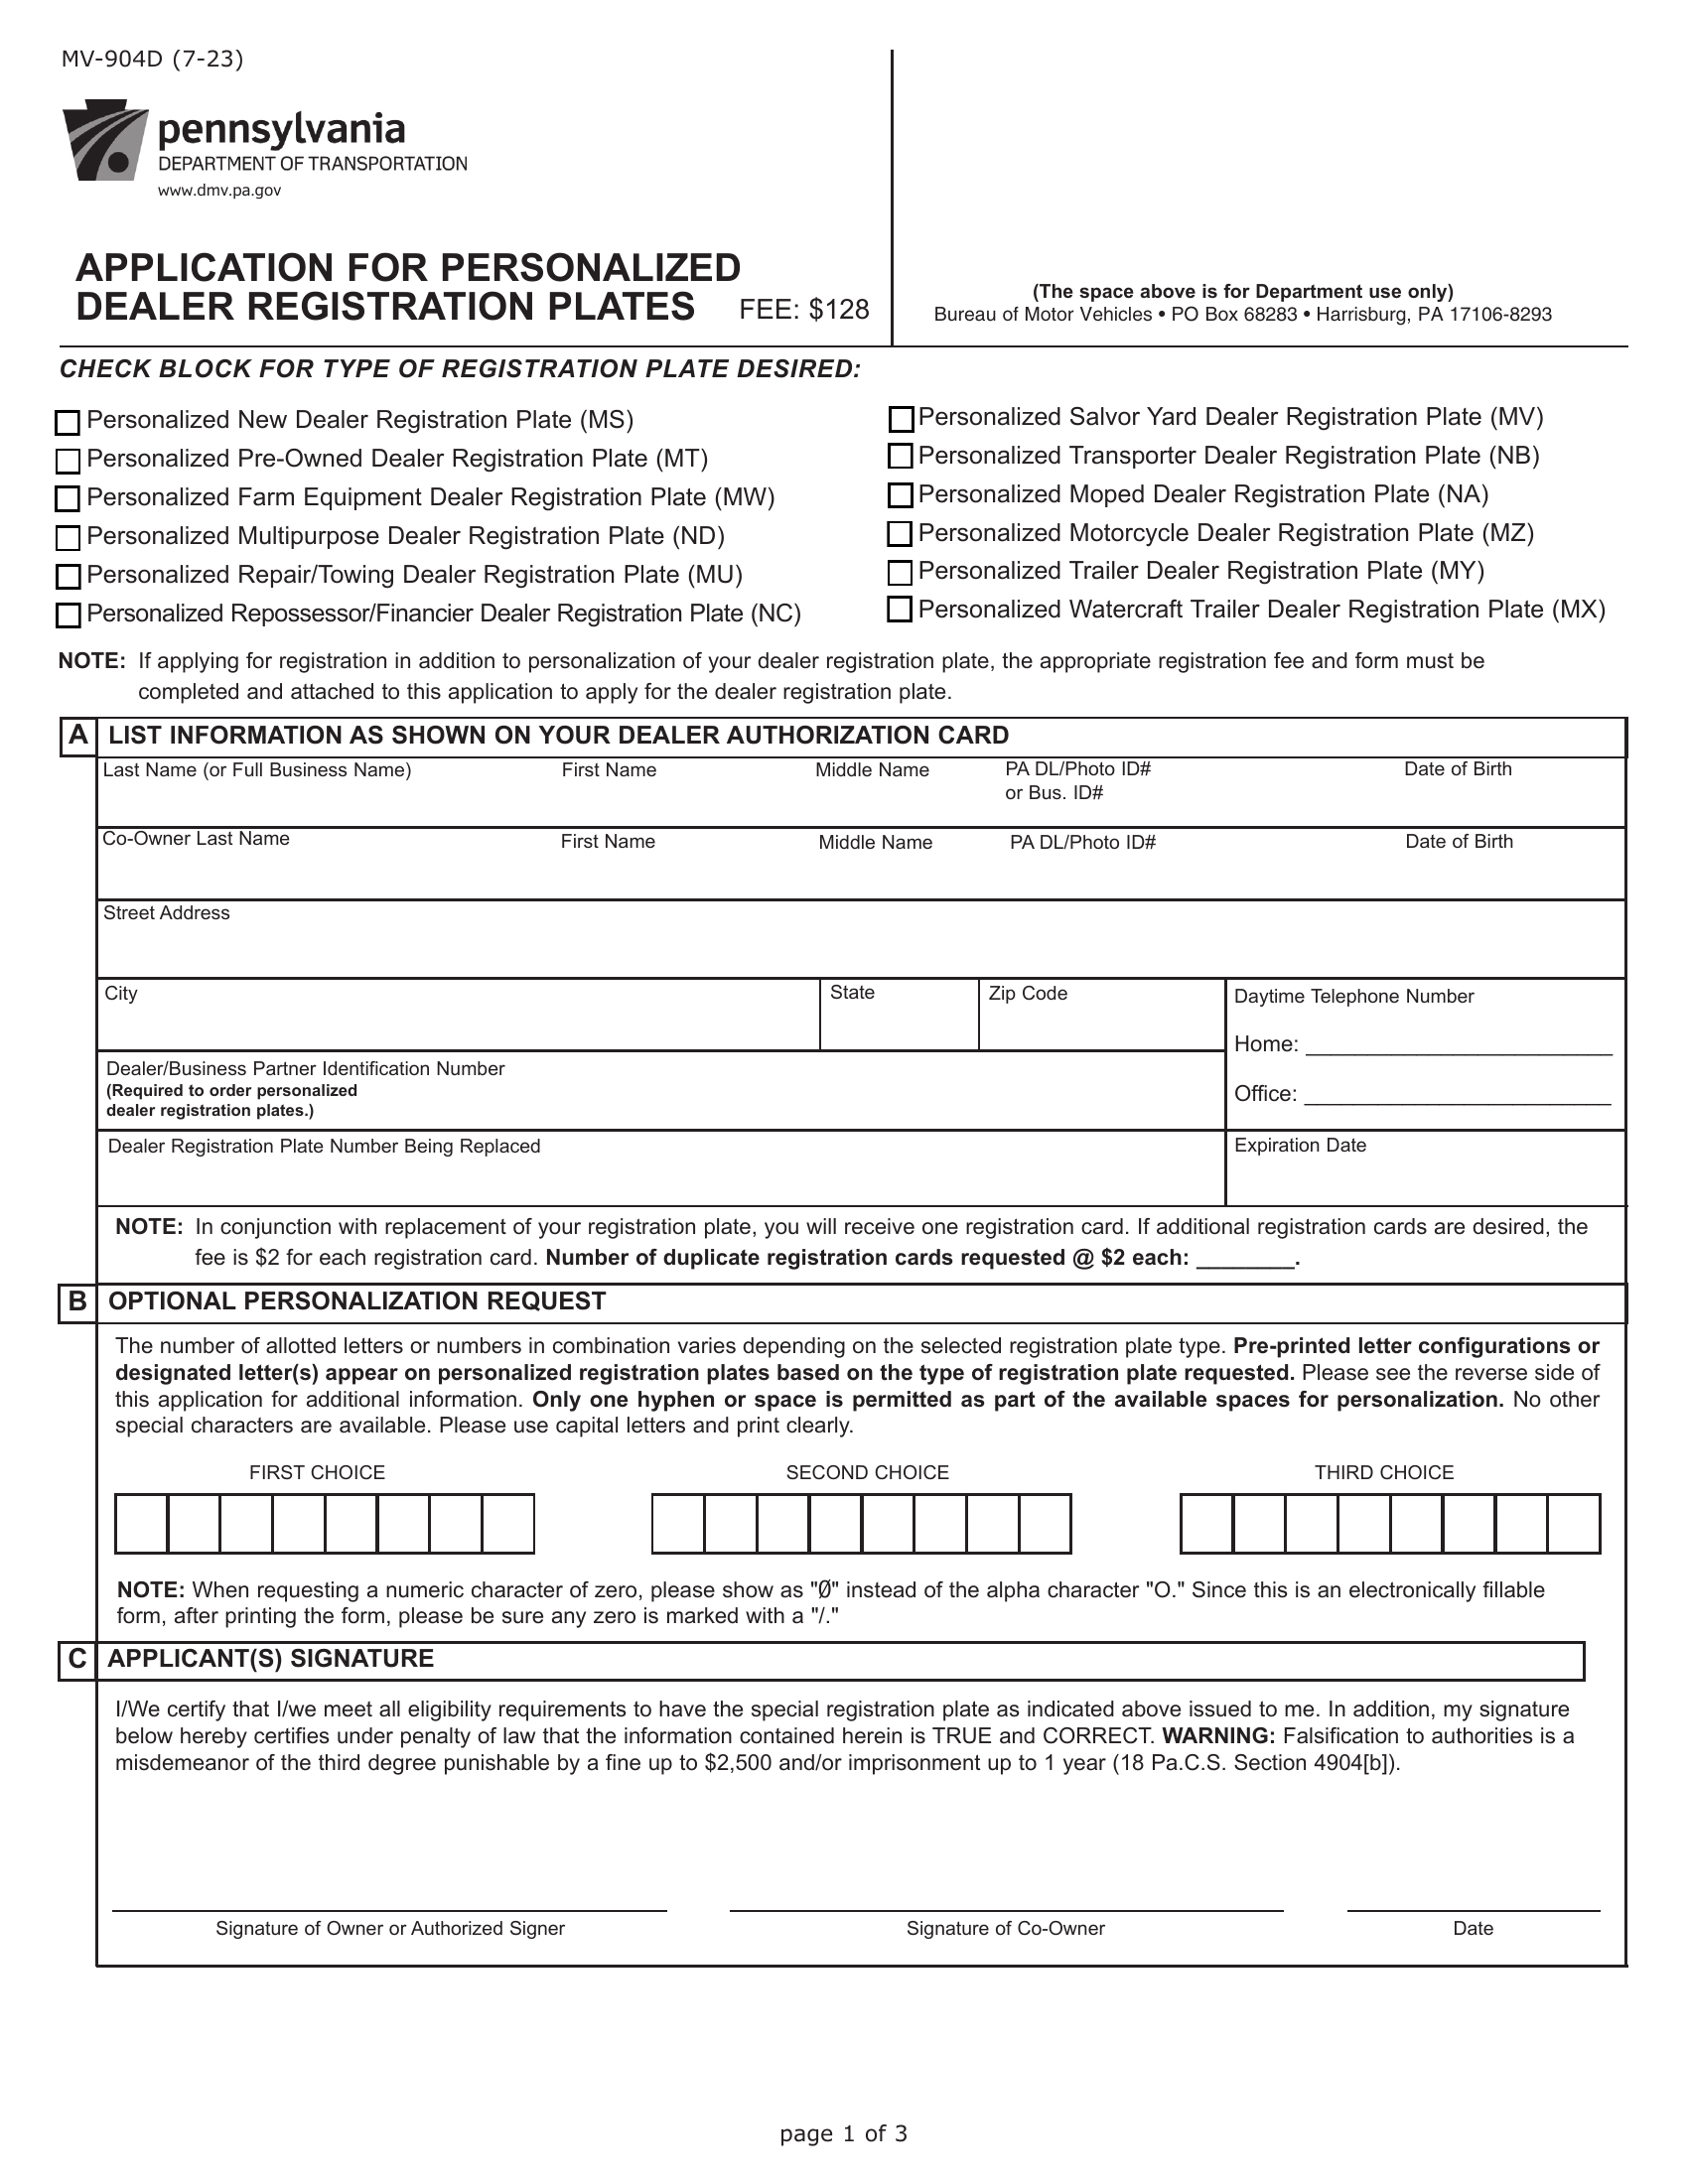 PA DMV Form MV-904D. Application For Personalized Dealer Registration